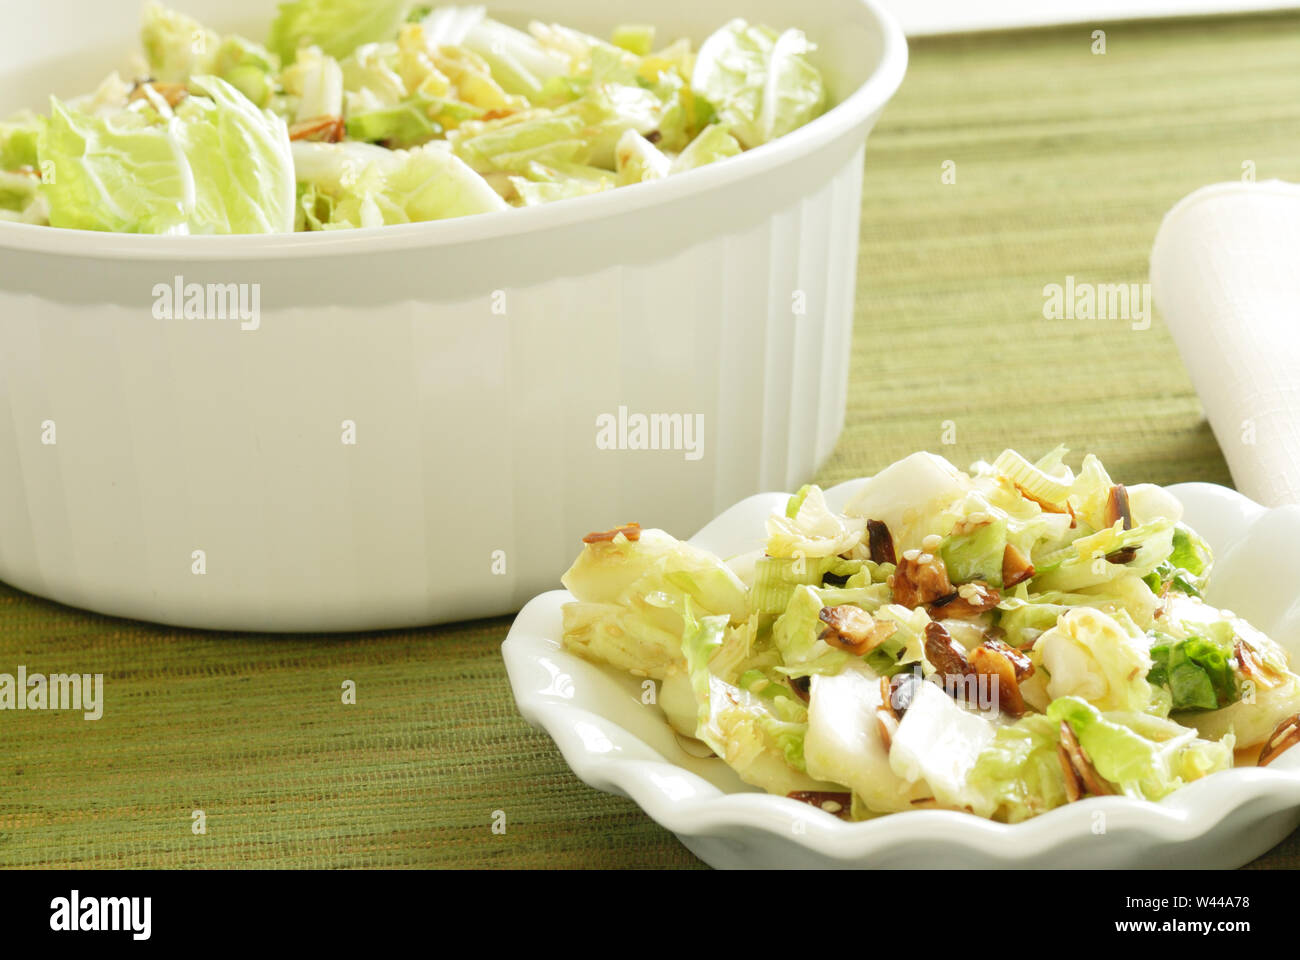 Un bol de salade de chou faite de chou nappa et parsemé de graines de sésame grillées et amandes tranchées, avec une portion individuelle au premier plan Banque D'Images